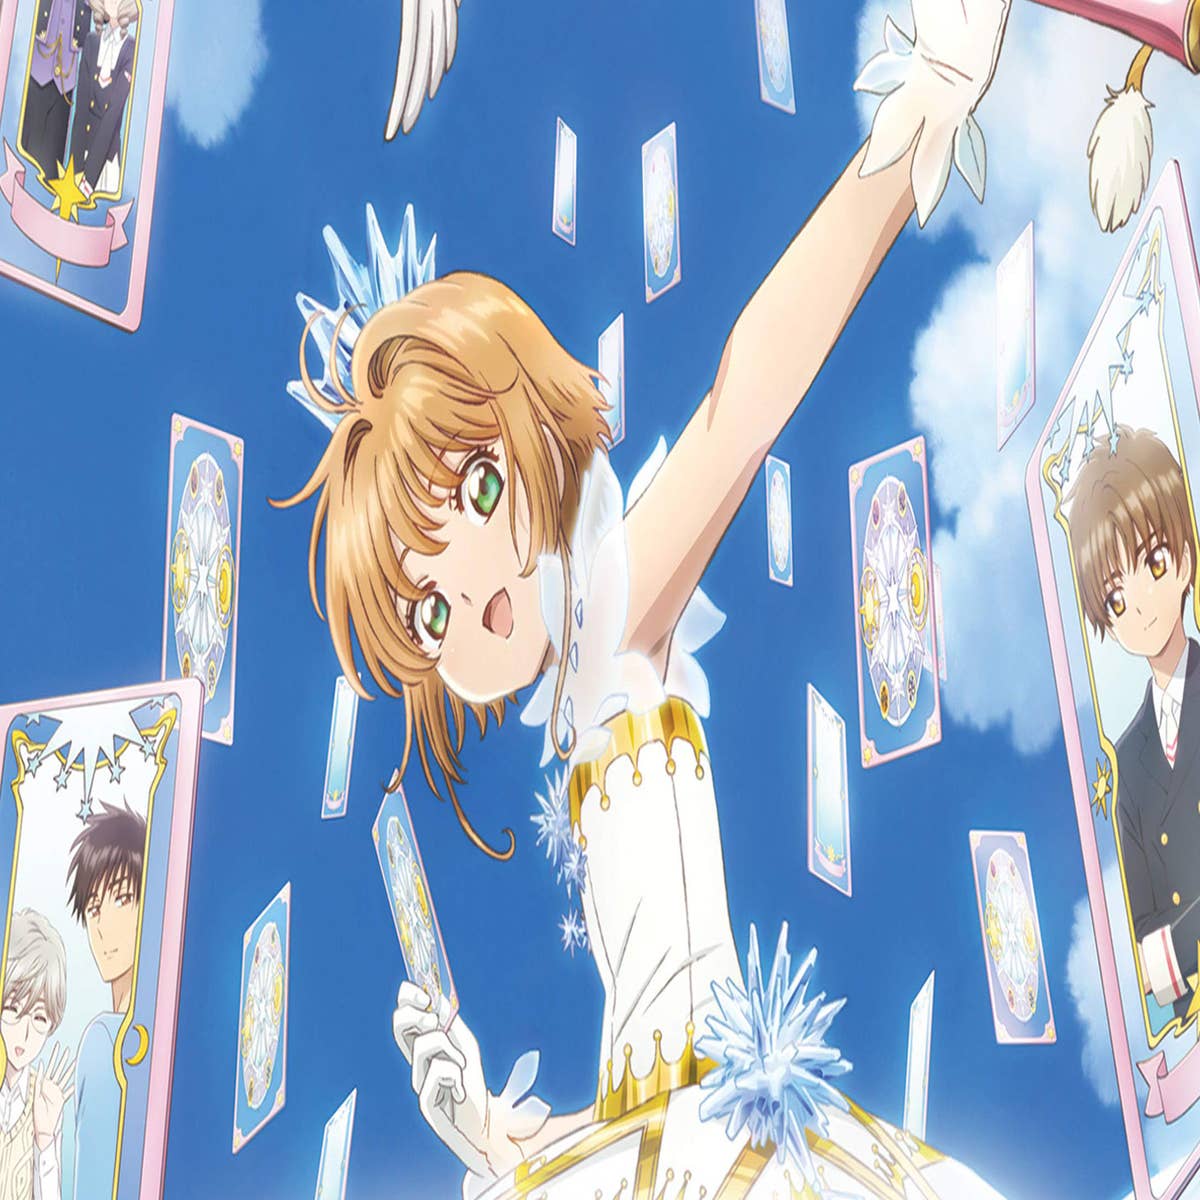 Cardcaptor Sakura: Clear Card Anime Gets Sequel - News - Anime